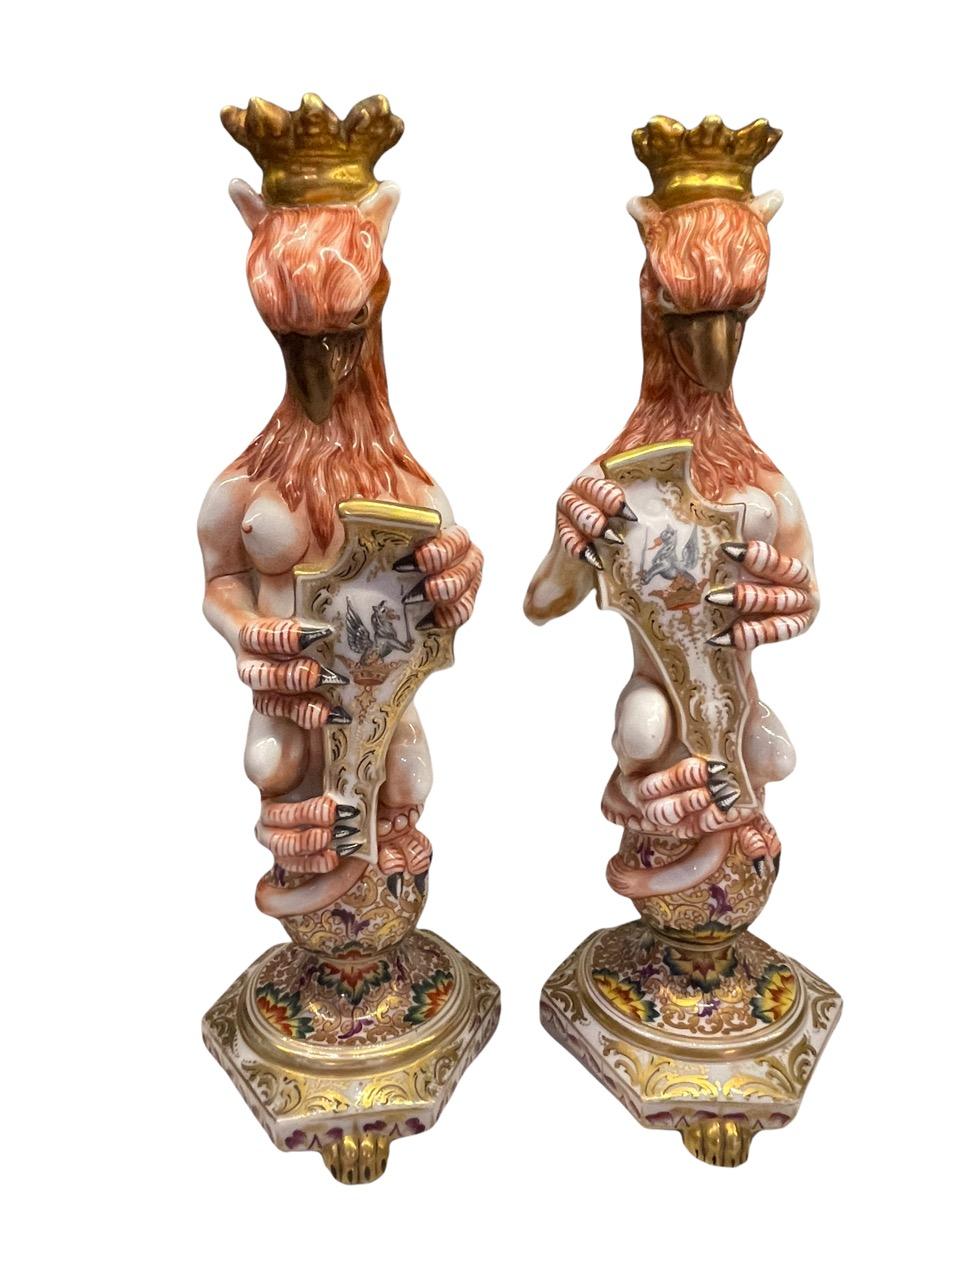 Capodimonte 19ème siècle Paire de figures de griffons couronnés et ailés en majolique. Les deux sont signés sur la base inférieure avec la signature utilisée de 1771 à 1834. Chacun d'entre eux tient un bouclier avec des motifs de griffons peints, et